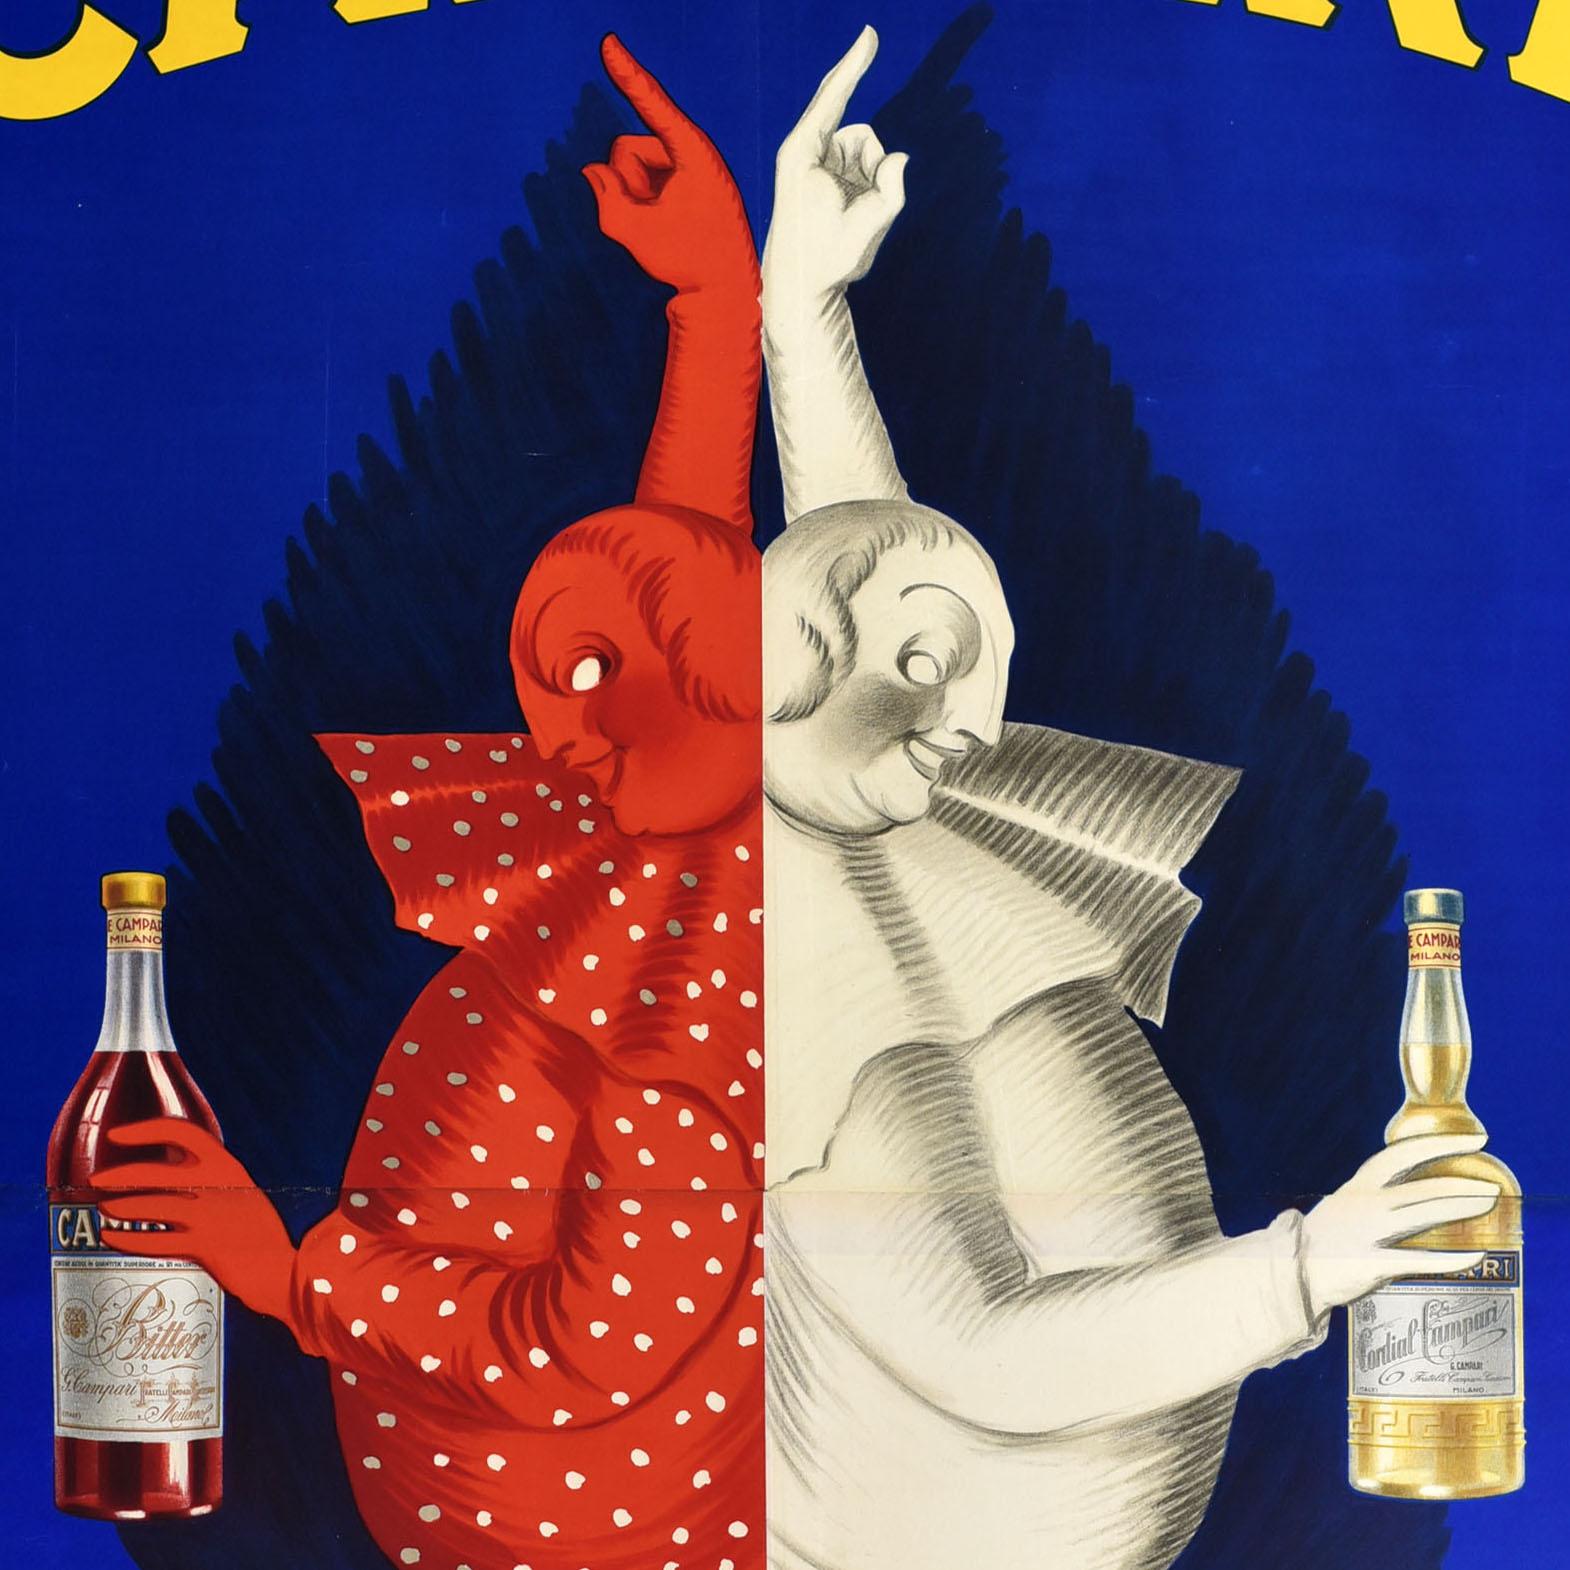 Original-Vintage-Werbeplakat Campari Milano, Cappiello, Alcohol, Italien – Print von Leonetto Cappiello